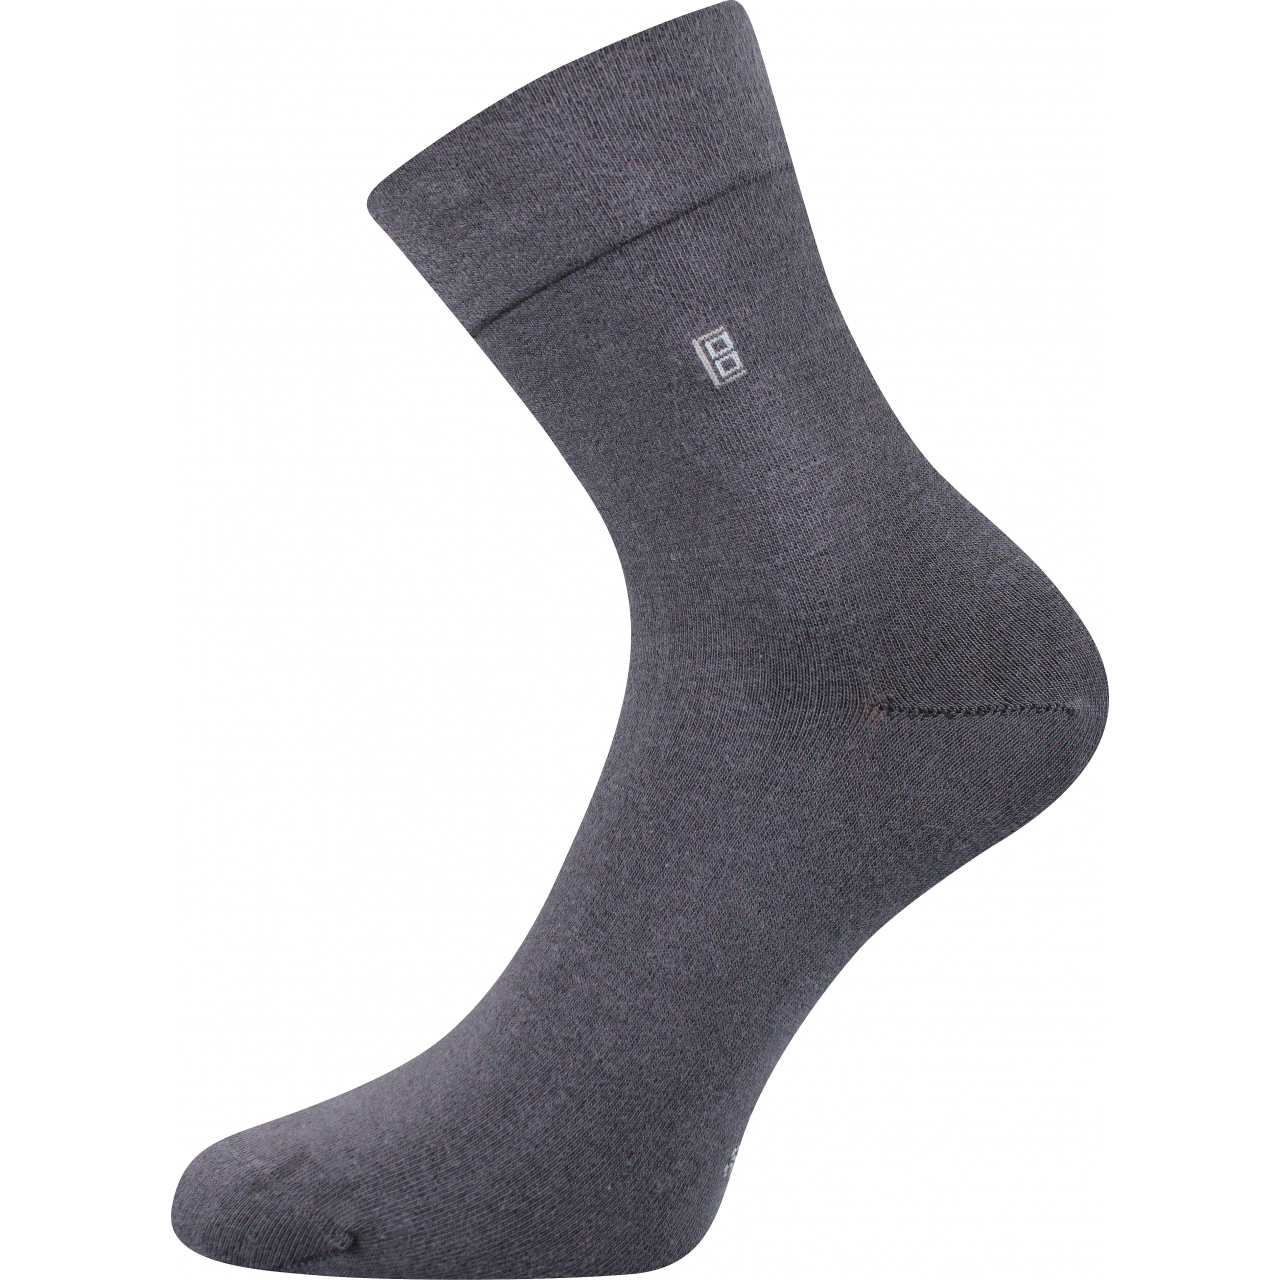 Ponožky pánské společenské Lonka Dagles - tmavě šedé, 39-42